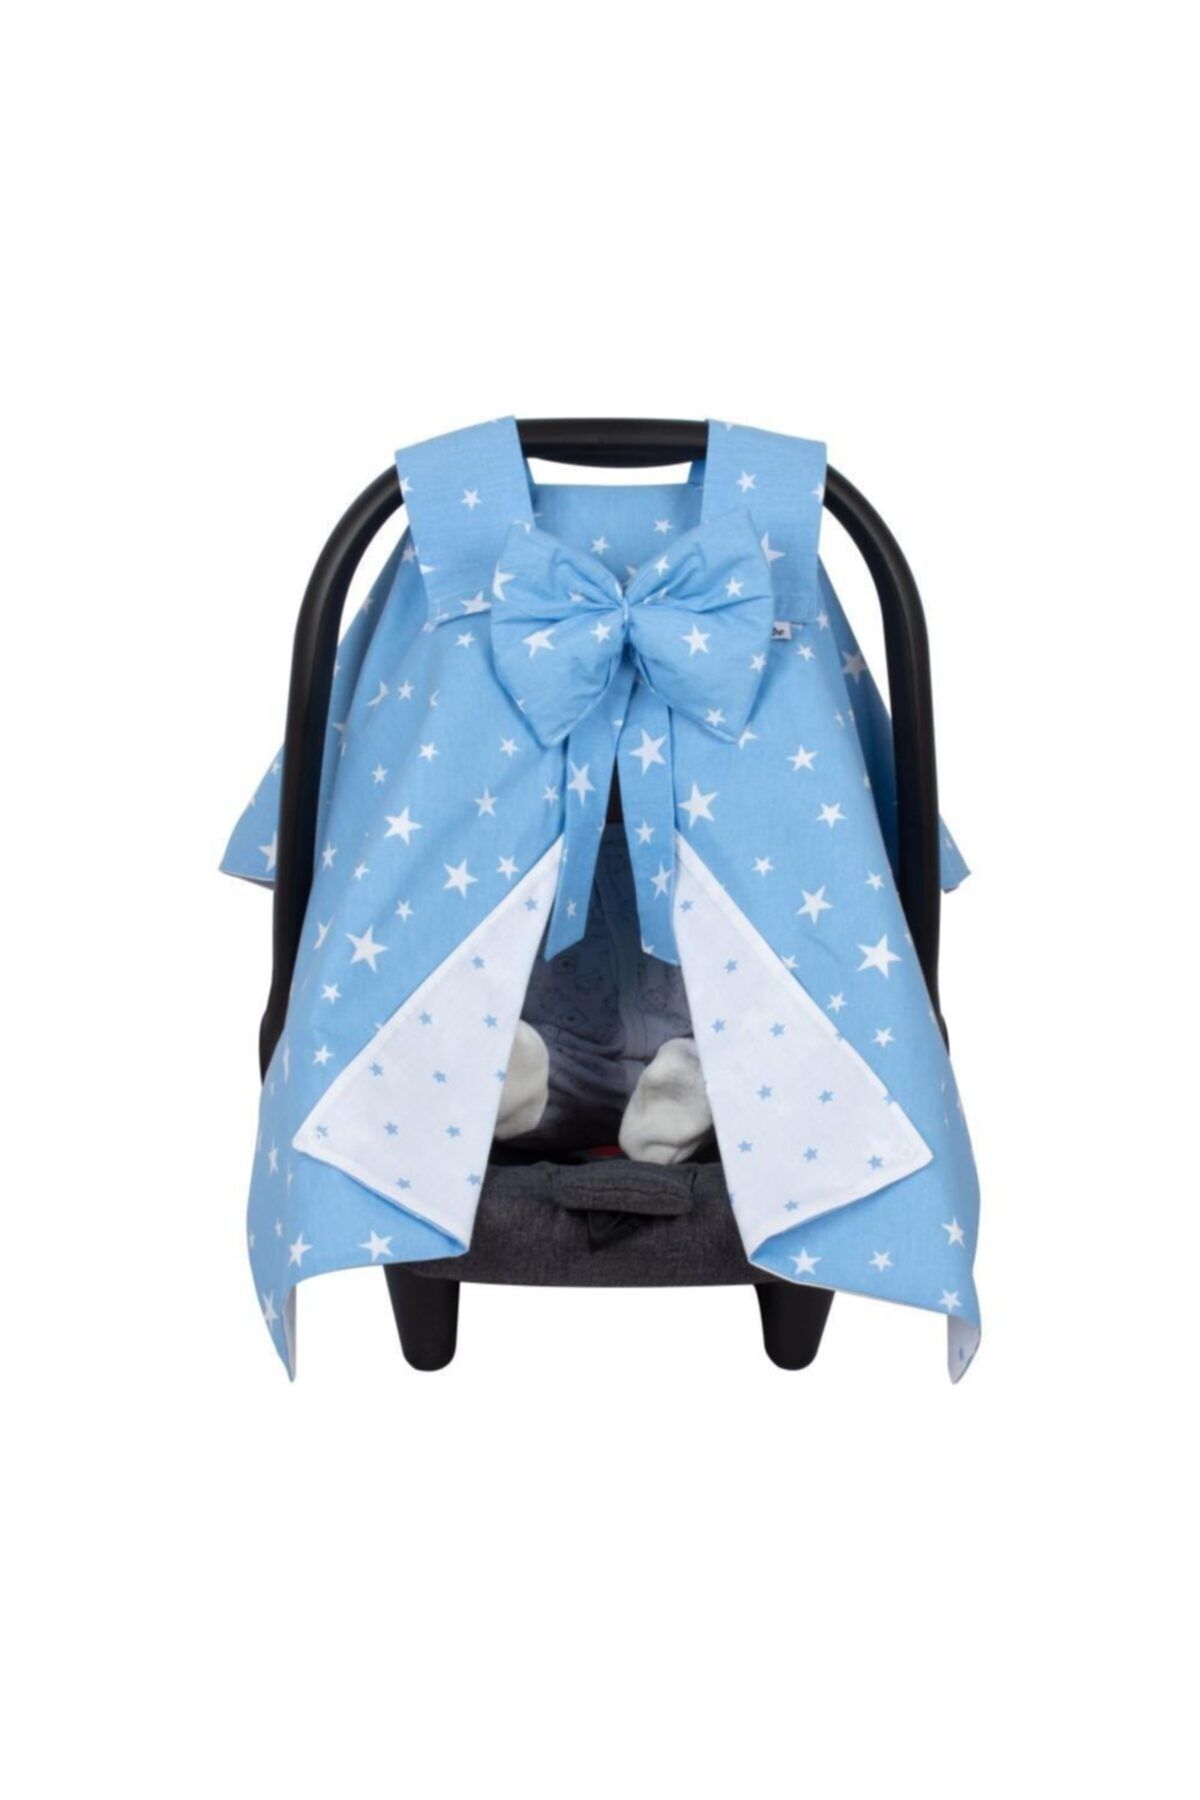 Sevi Bebe Fiyonklu Anakucağı Örtüsü Mavi Yıldızlı Desen